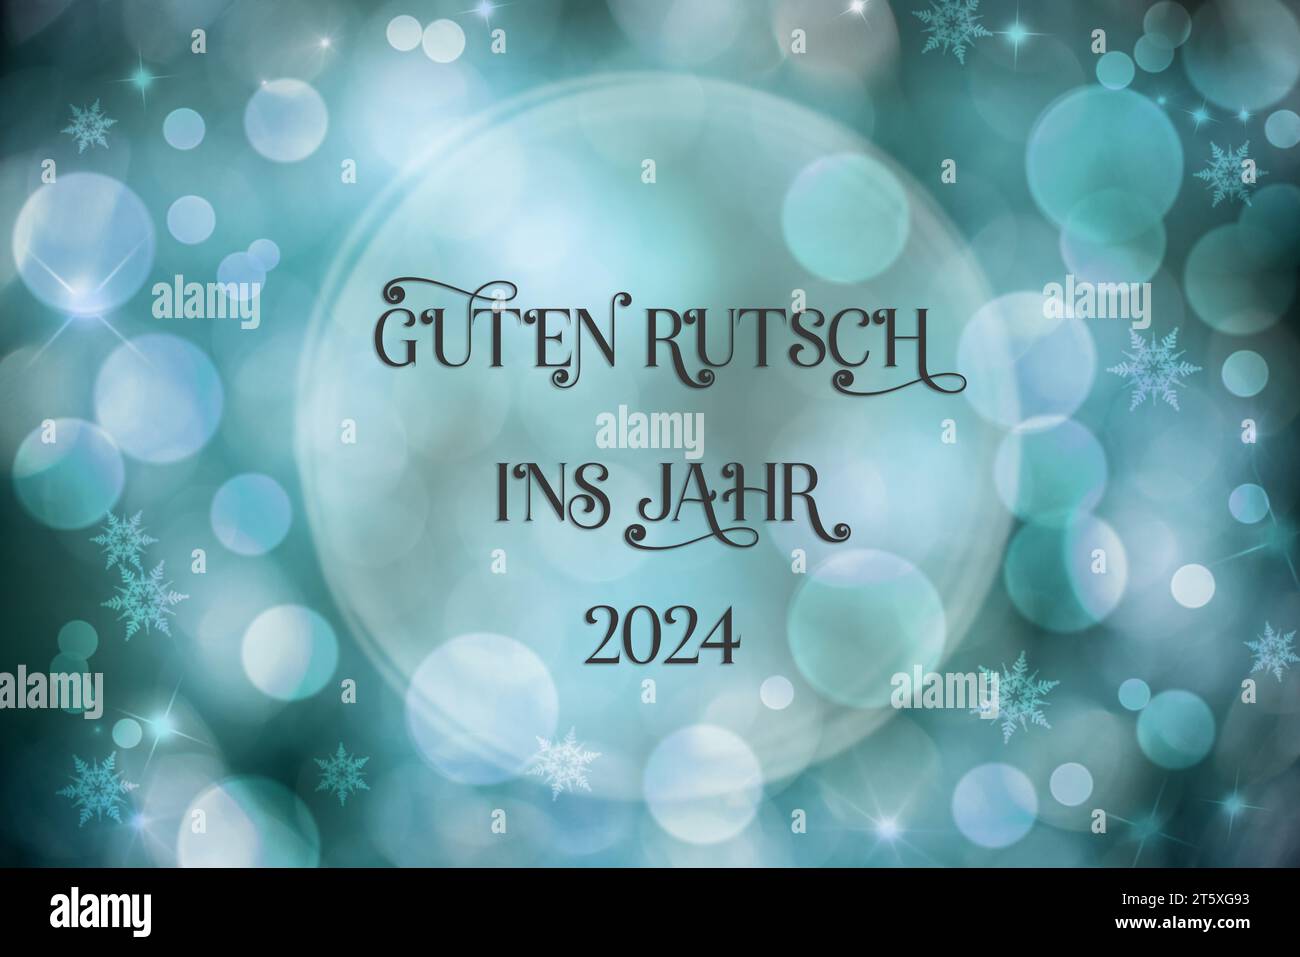 Texte Guten Rutsch 2024, signifie heureux 2024, fond bleu de Noël Banque D'Images